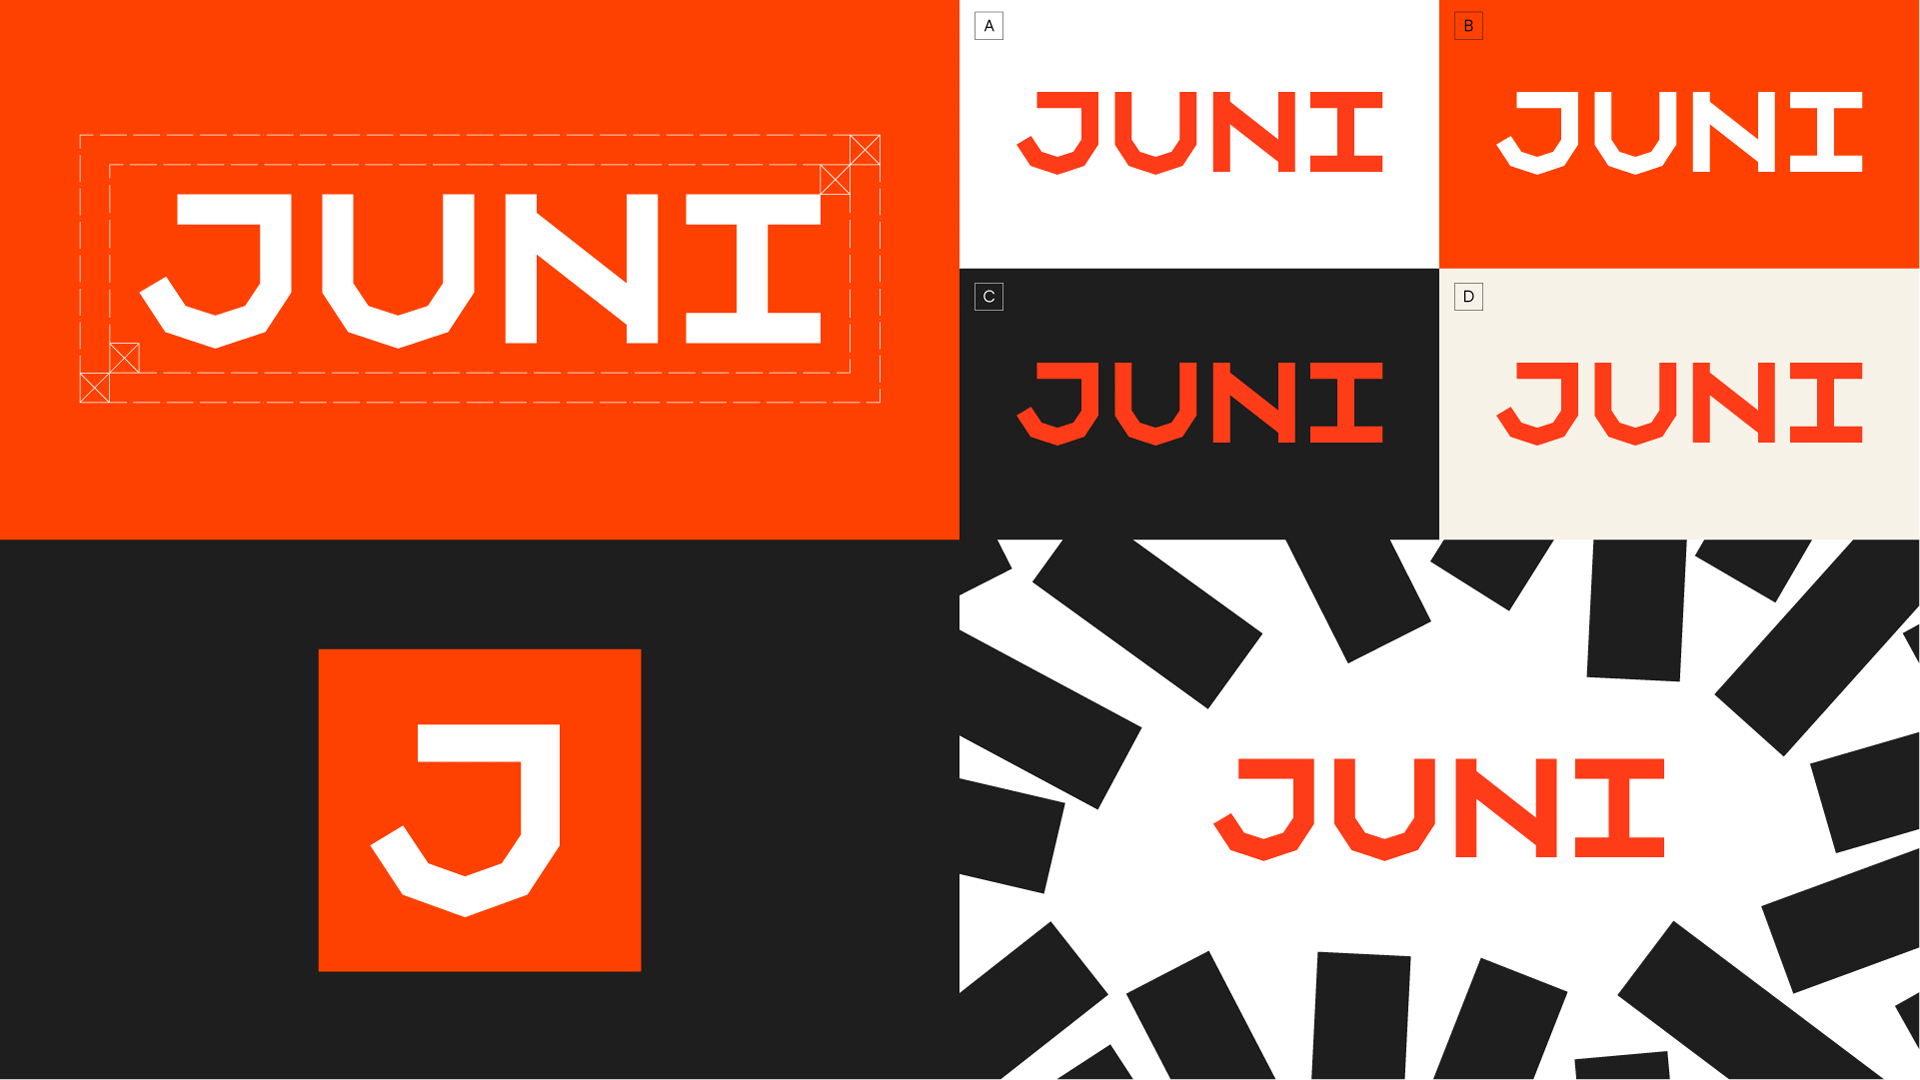 Juni金融科技初创公司logo设计品牌形象vi设计,源自多米诺骨牌粗线条色块核心视觉